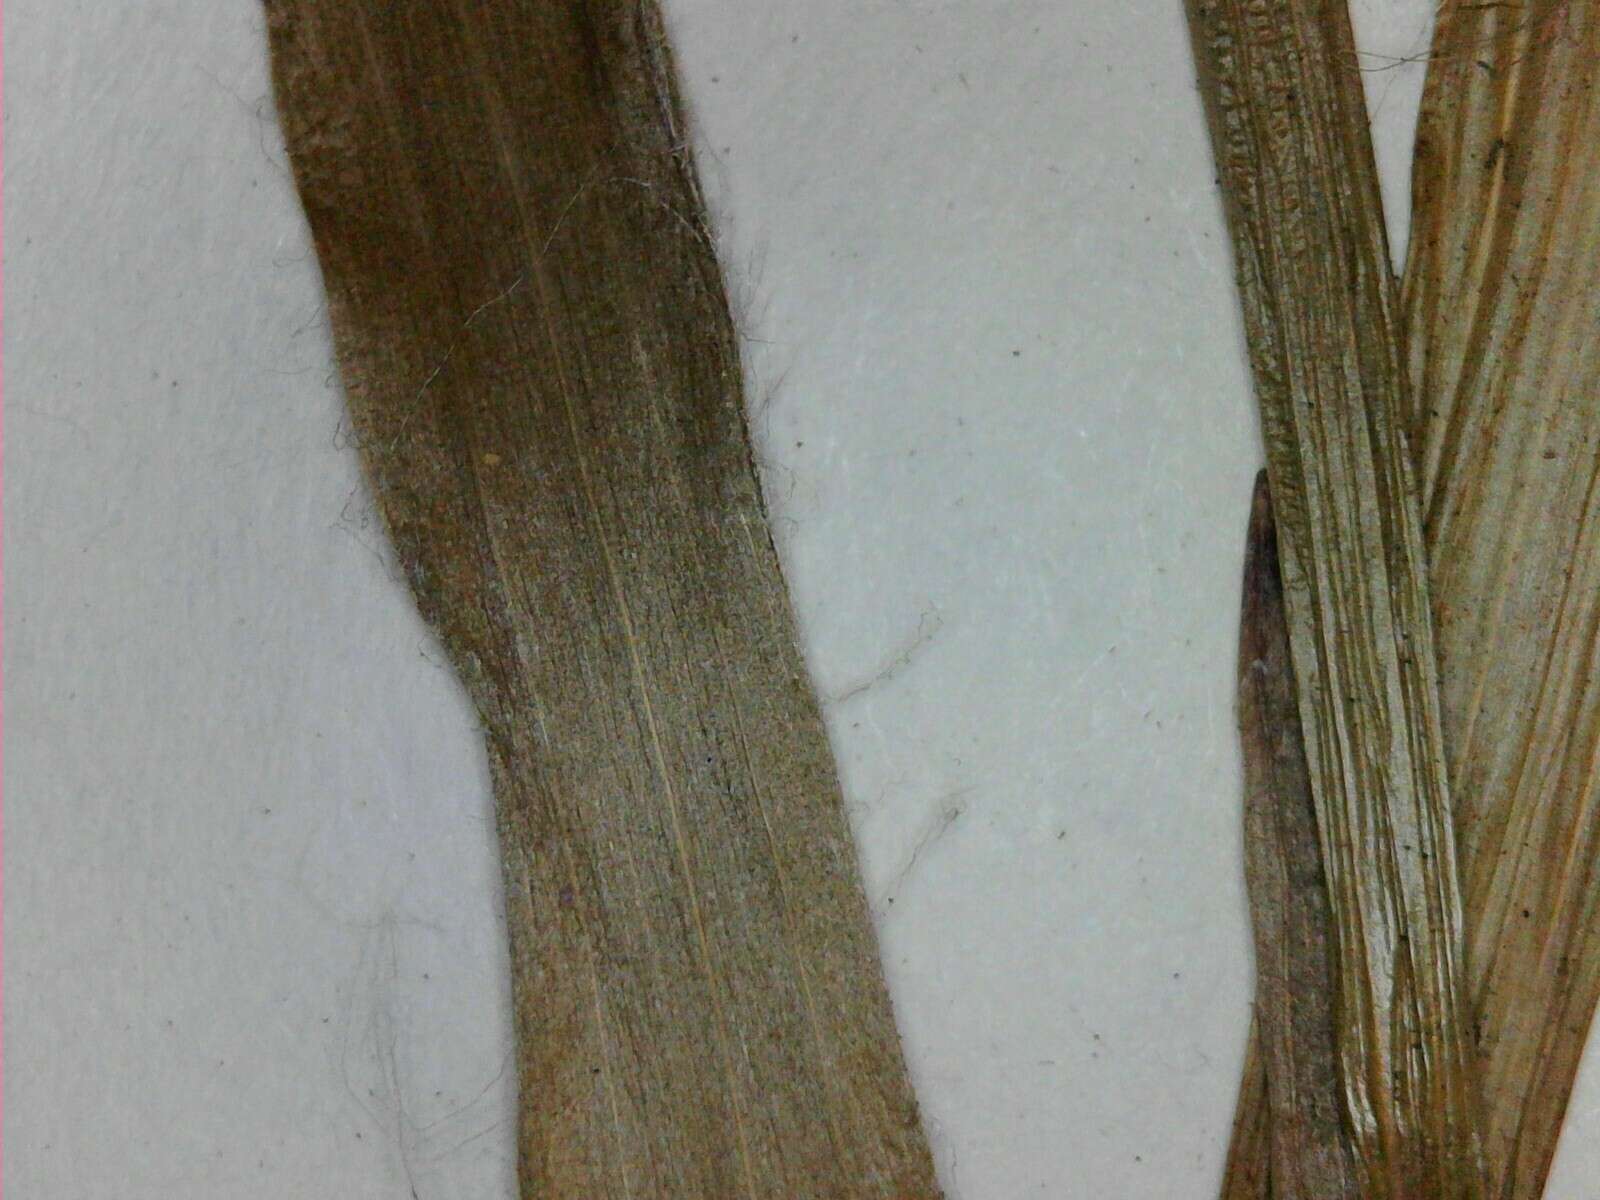 Image of hairy woodrush